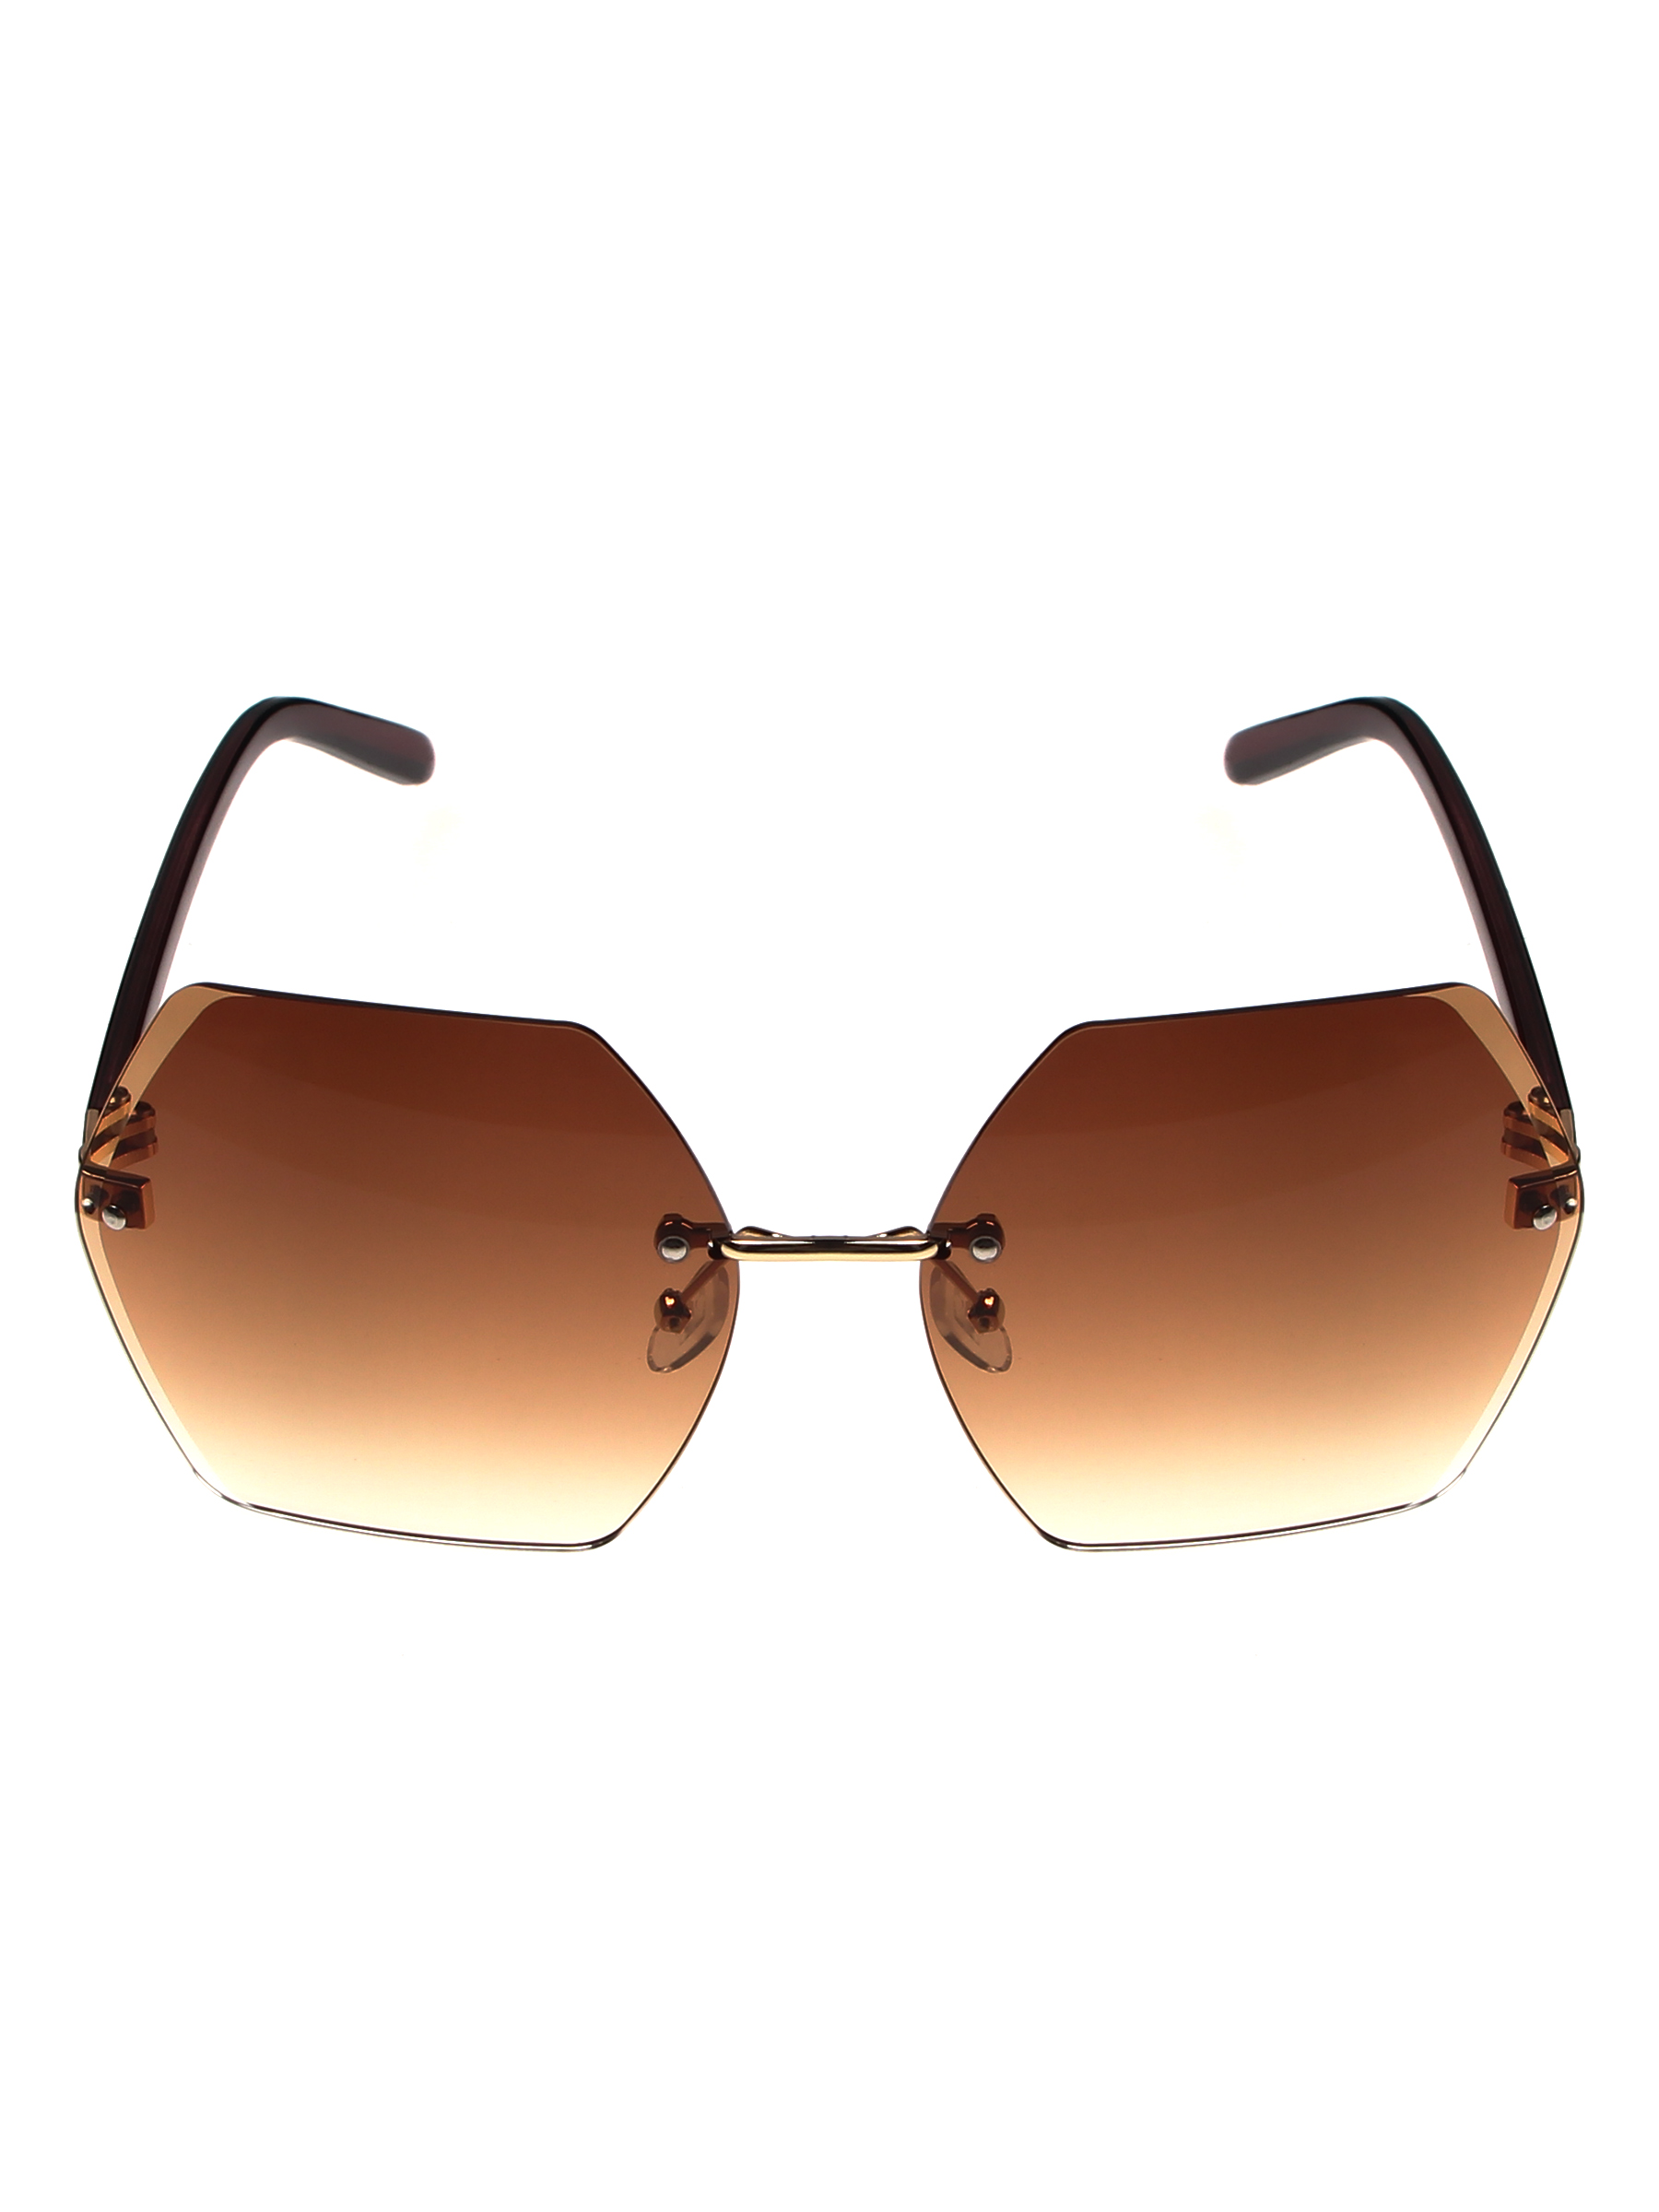 Солнцезащитные очки женские Pretty Mania MDP032 коричневые